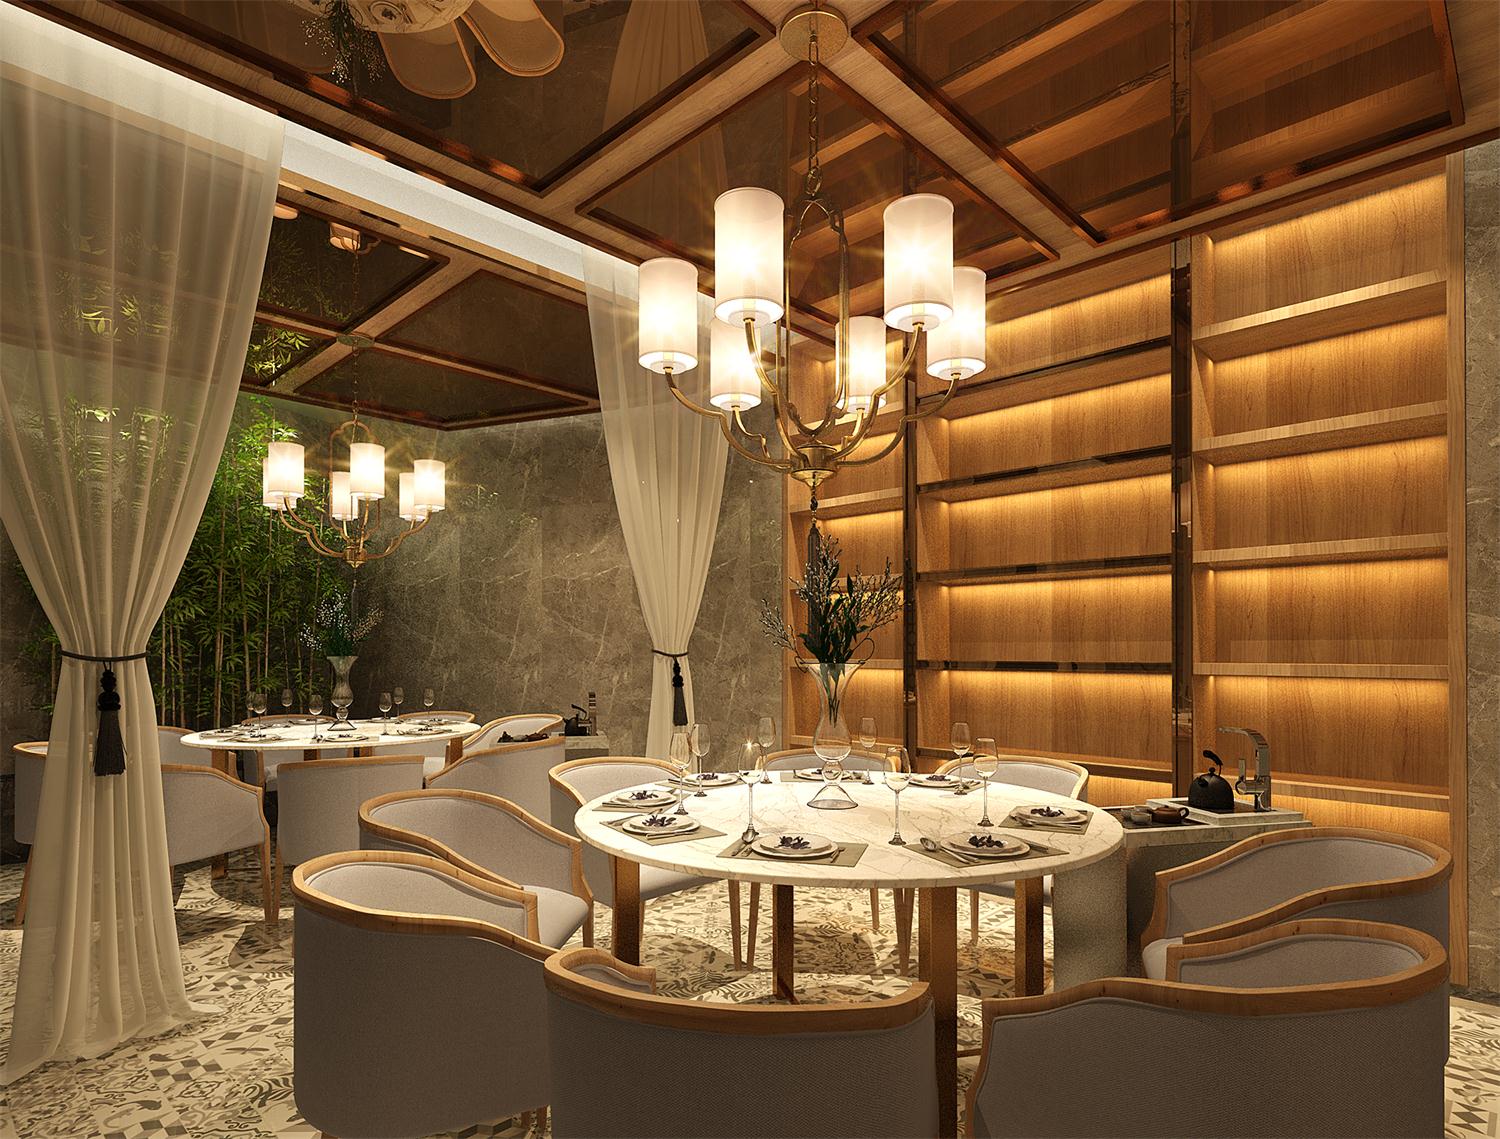 粤式早茶深圳餐厅空间设计——趣茗轩创意茶楼大包房空间设计